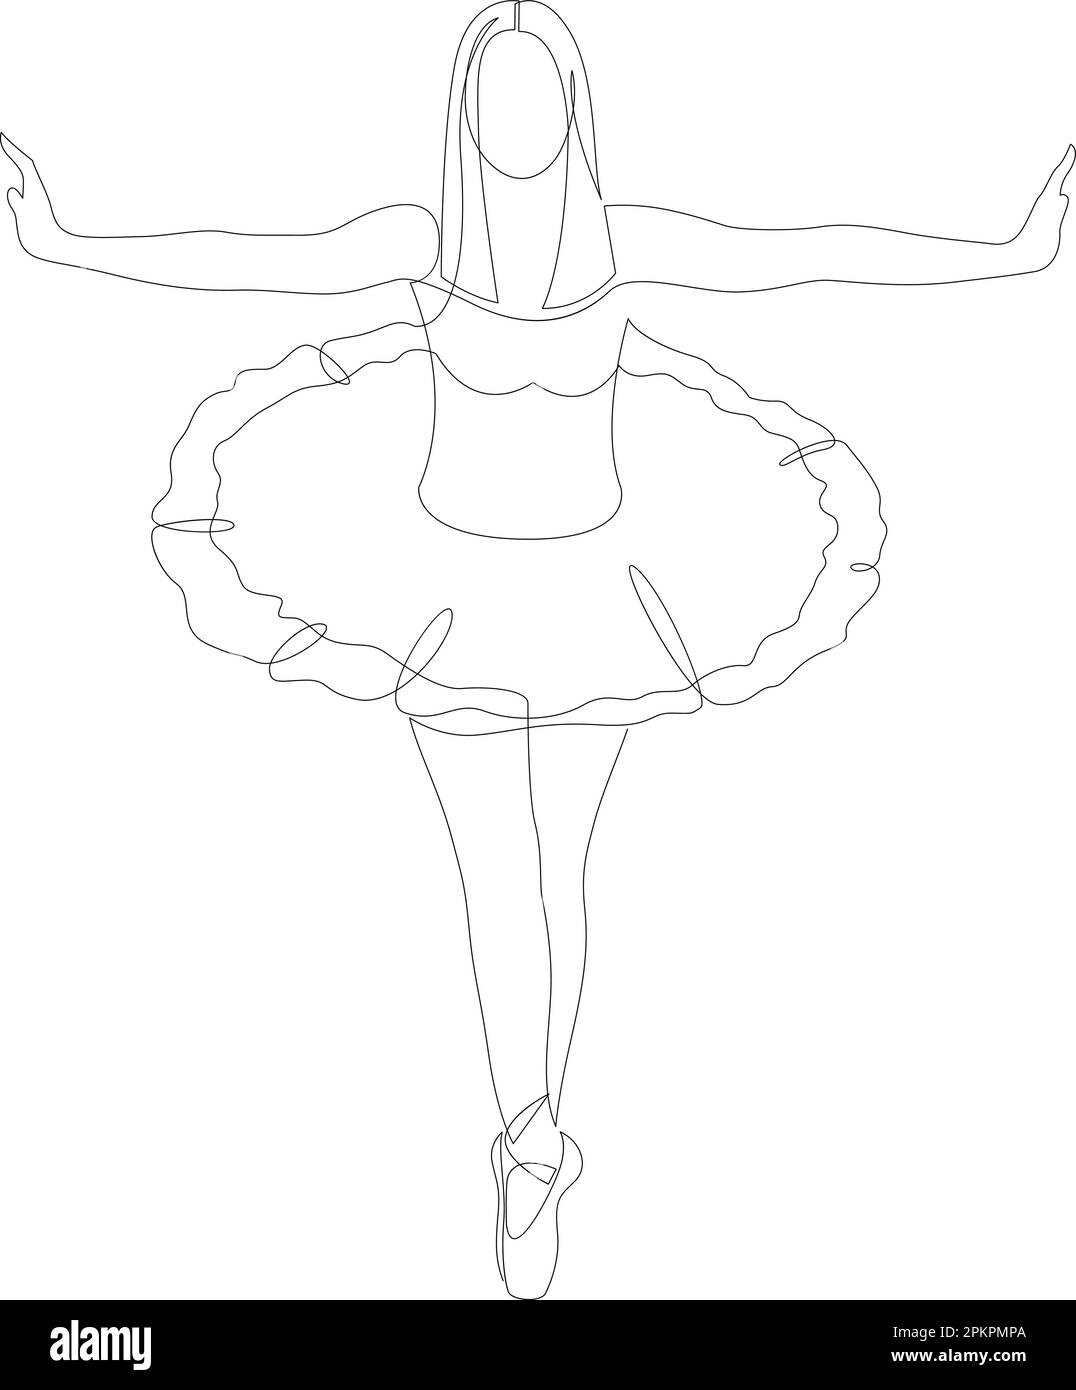 Un dessin d'une seule ligne de jeune danseur de ballet. Dessin au trait continu Ballerina. Illustration vectorielle Illustration de Vecteur